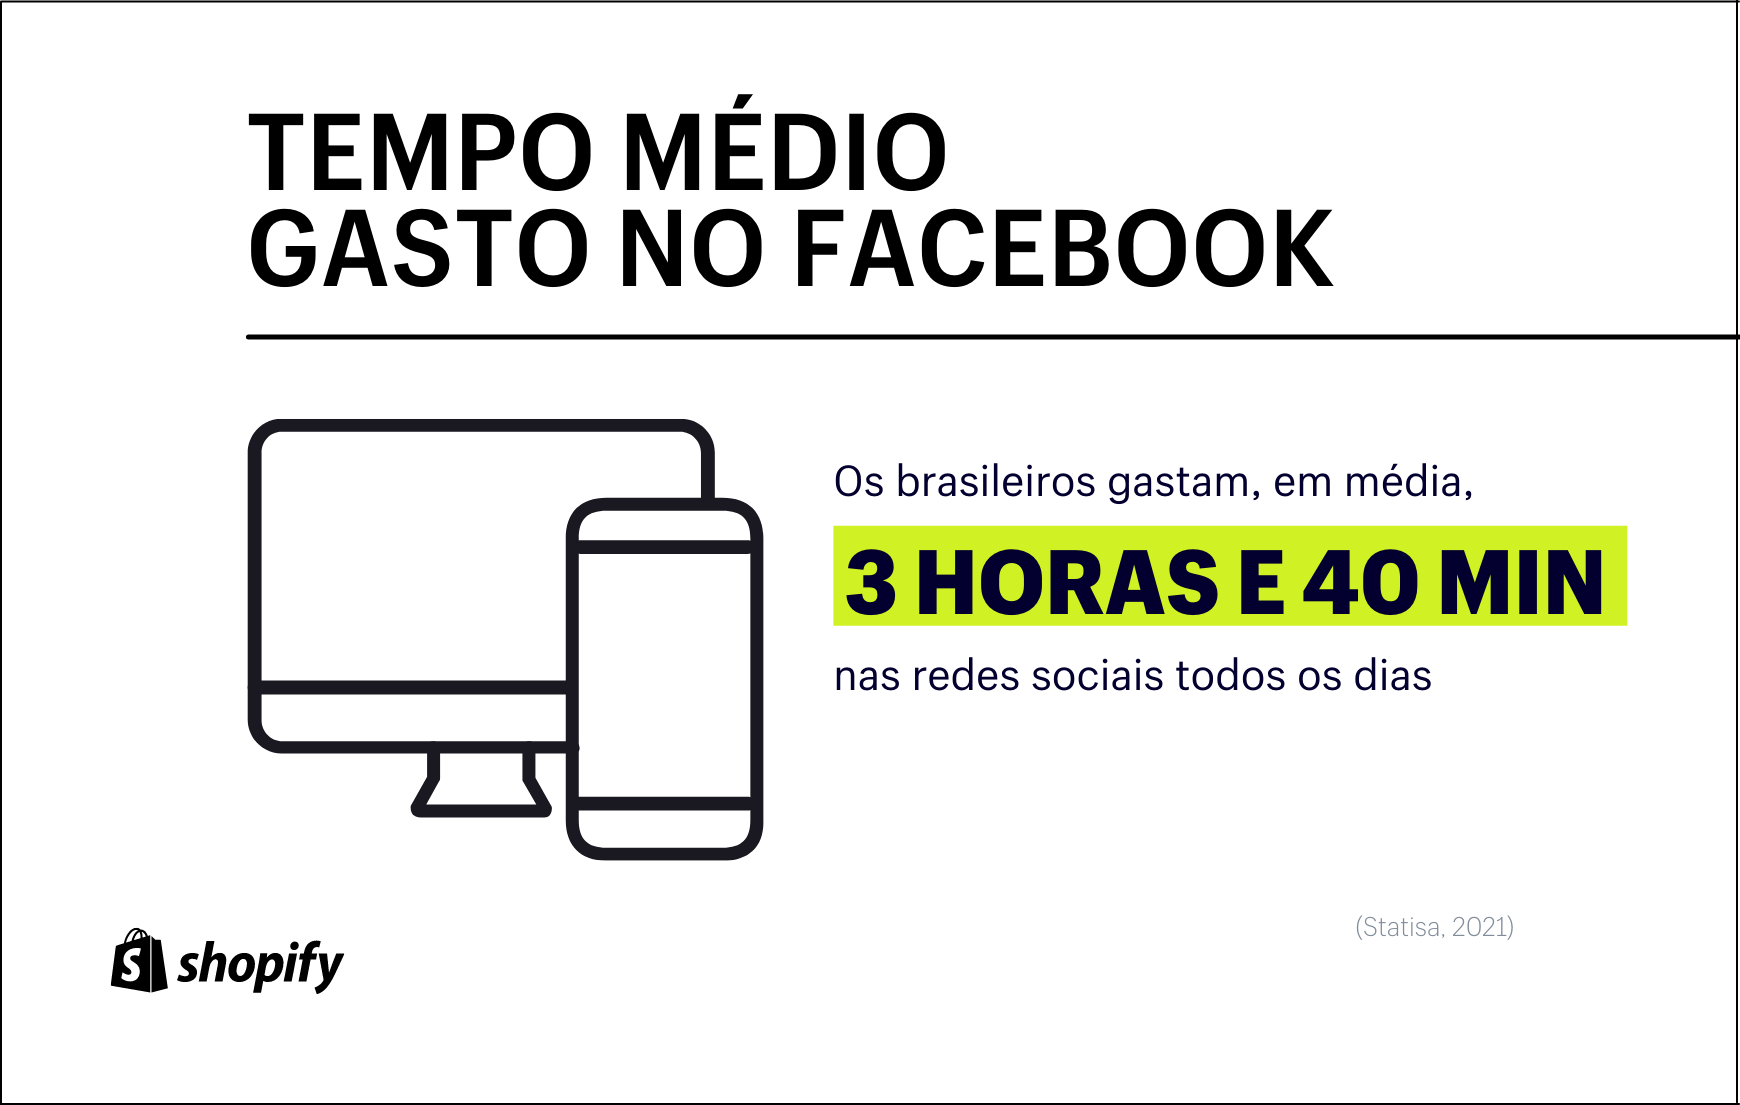 Infográfico em plano de fundo branco e com texto em preto e detalhes em verde, no qual há informação de que o tempo médio gasto no Facebook e nas redes sociais é de 3h40min no Brasil